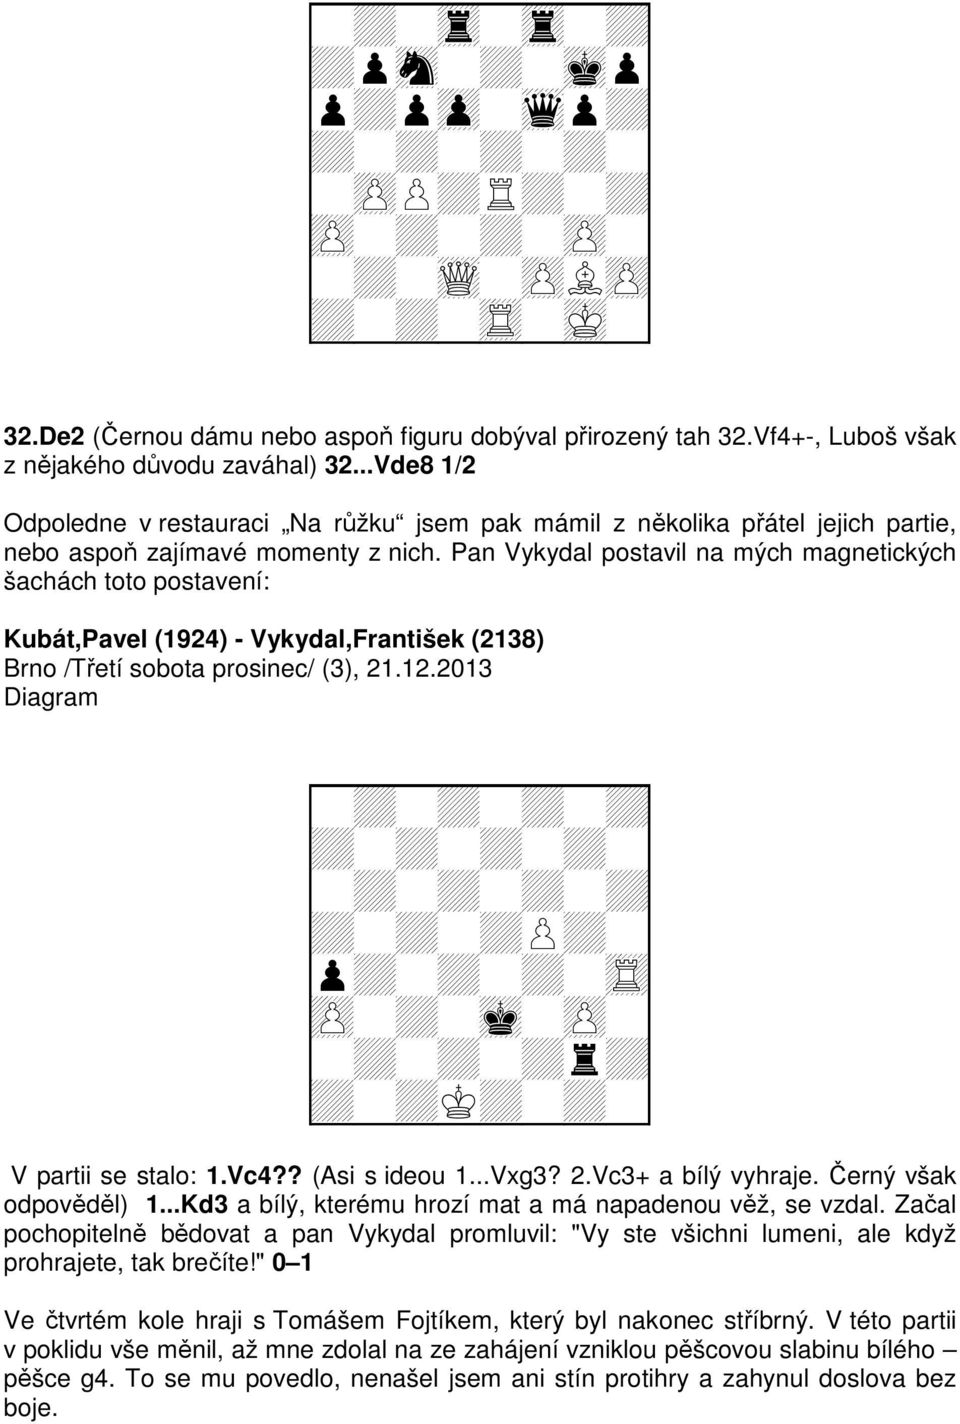 Pan Vykydal postavil na mých magnetických šachách toto postavení: Kubát,Pavel (1924) - Vykydal,František (2138) Brno /Třetí sobota prosinec/ (3), 21.12.2013 Diagram + V partii se stalo: 1.Vc4?